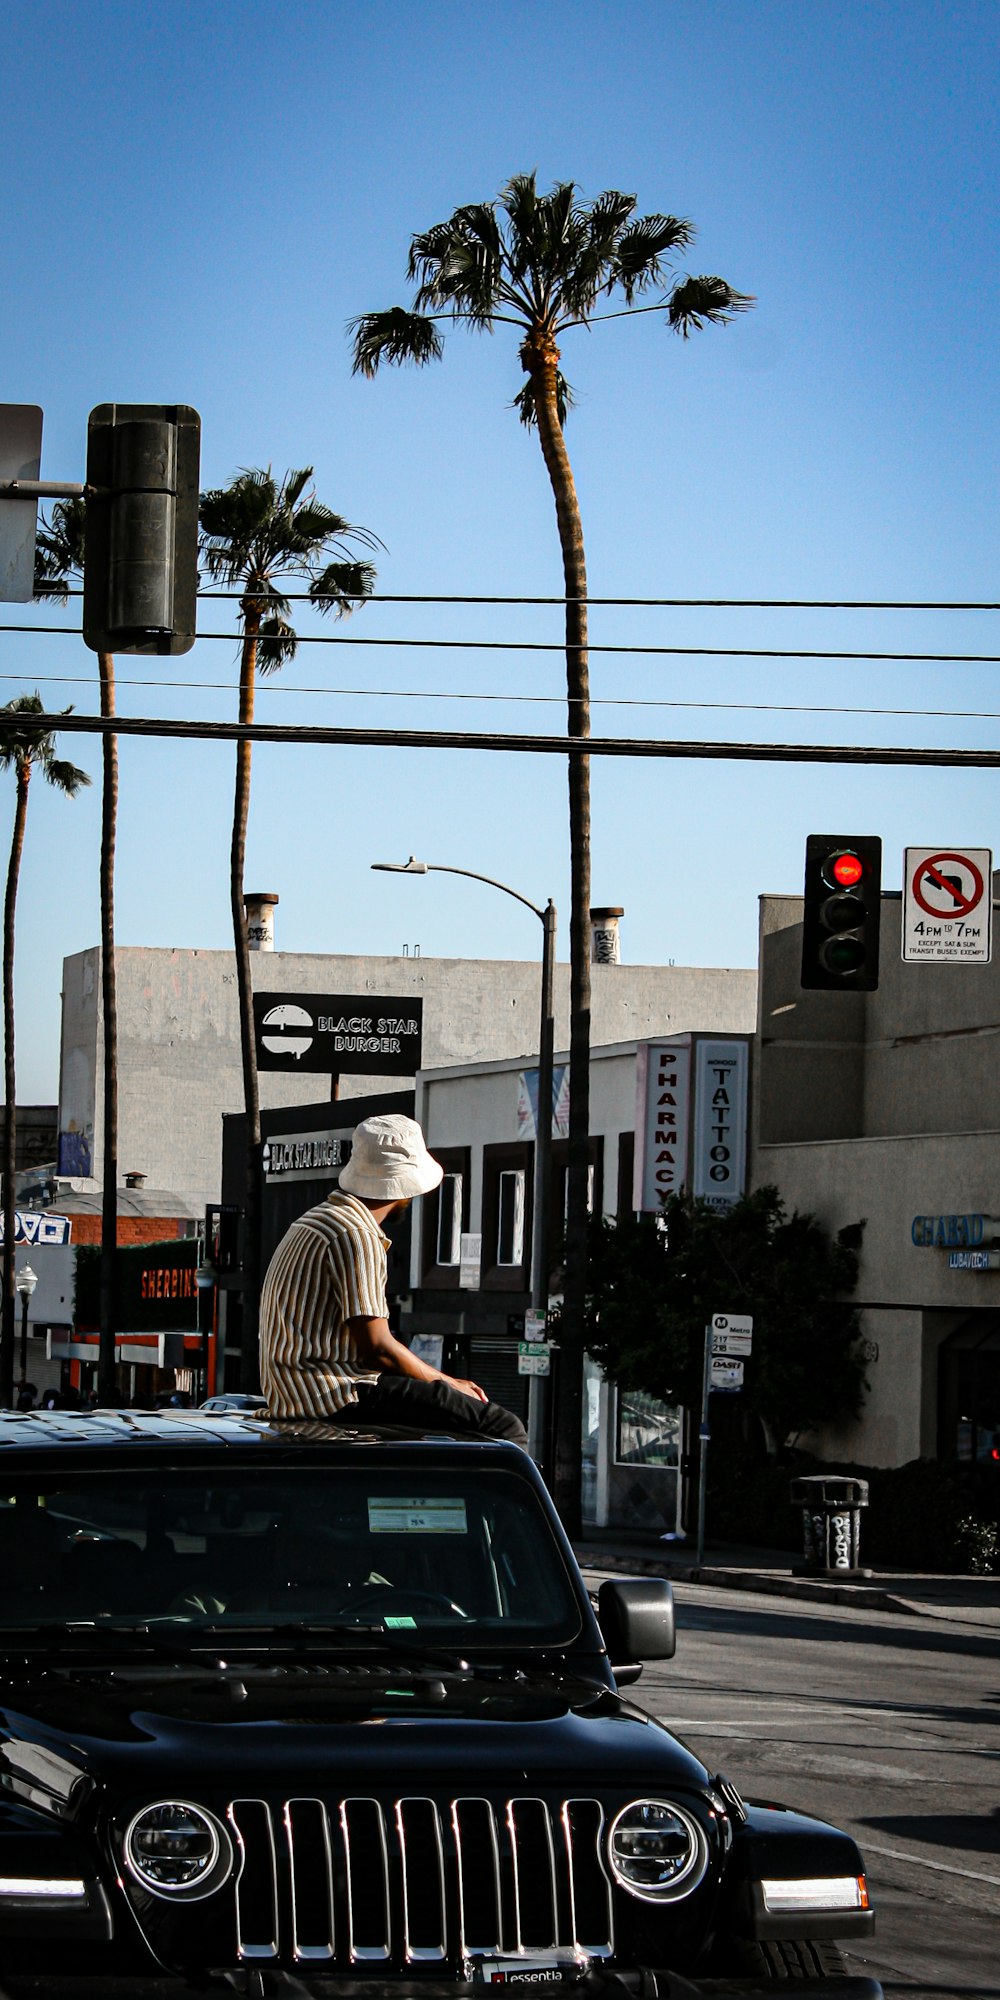 Uomo in camicia a strisce bianche e nere e cappello marrone che si siede sul marciapiede durante il giorno